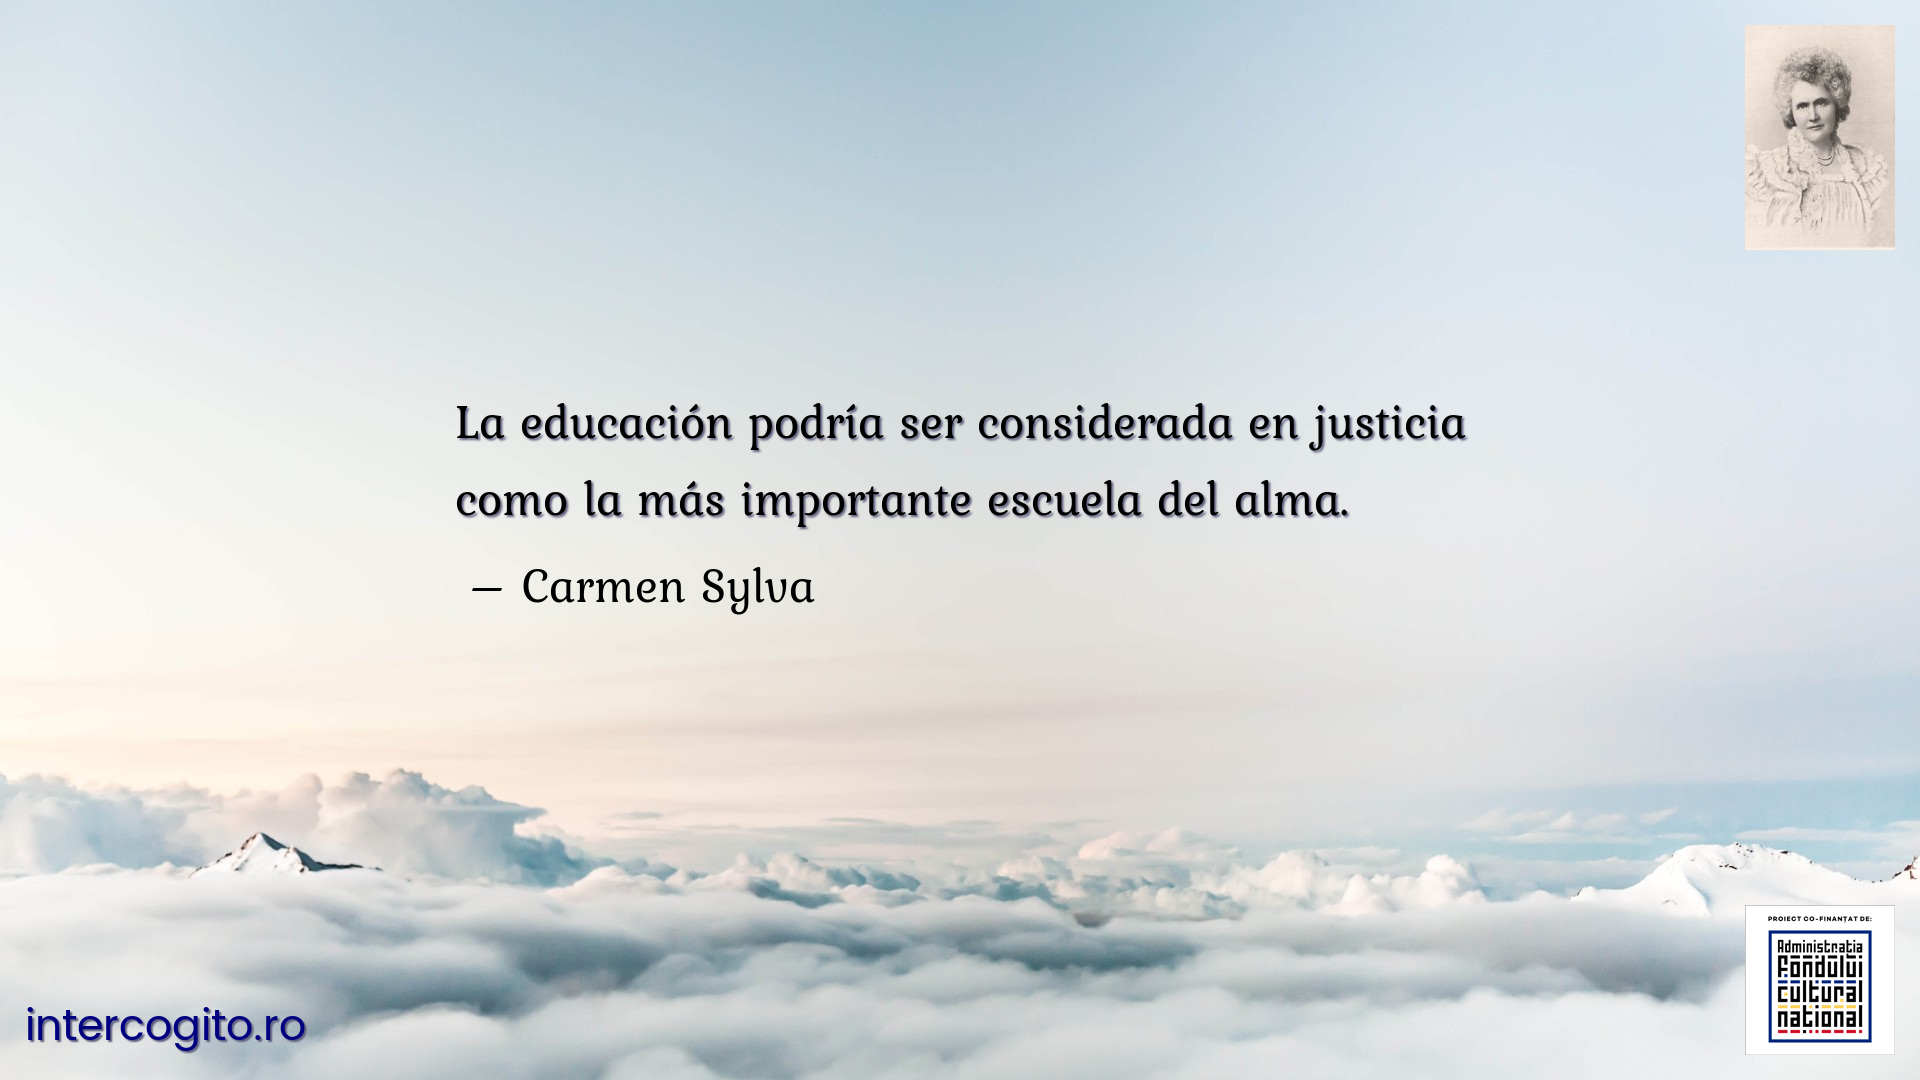 La educación podría ser considerada en justicia como la más importante escuela del alma.